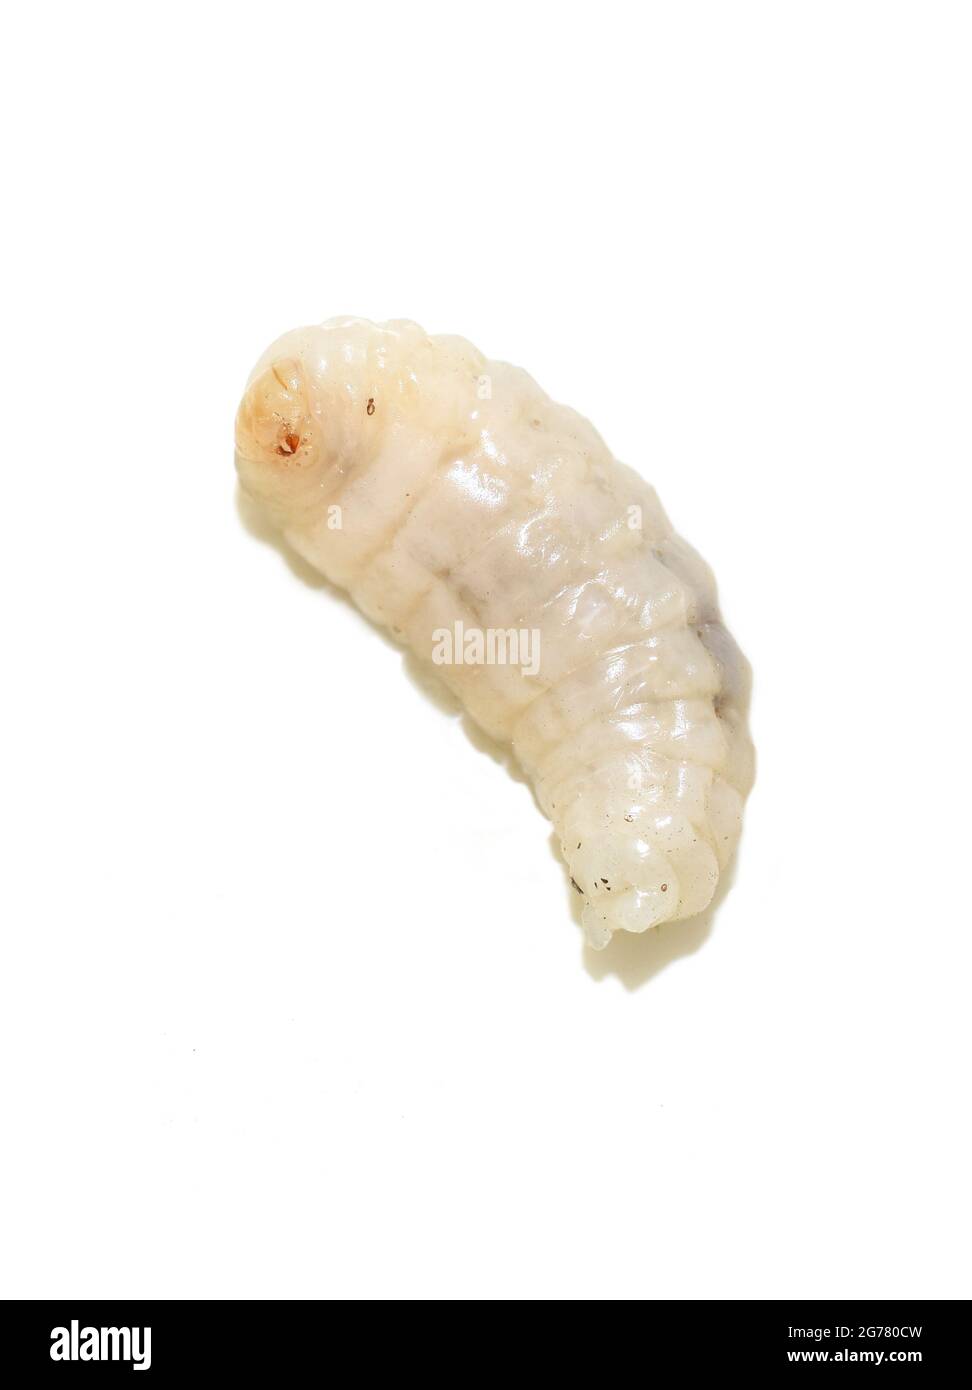 Larva of the stinging wasp Vespula germanica isolated on white background Stock Photo